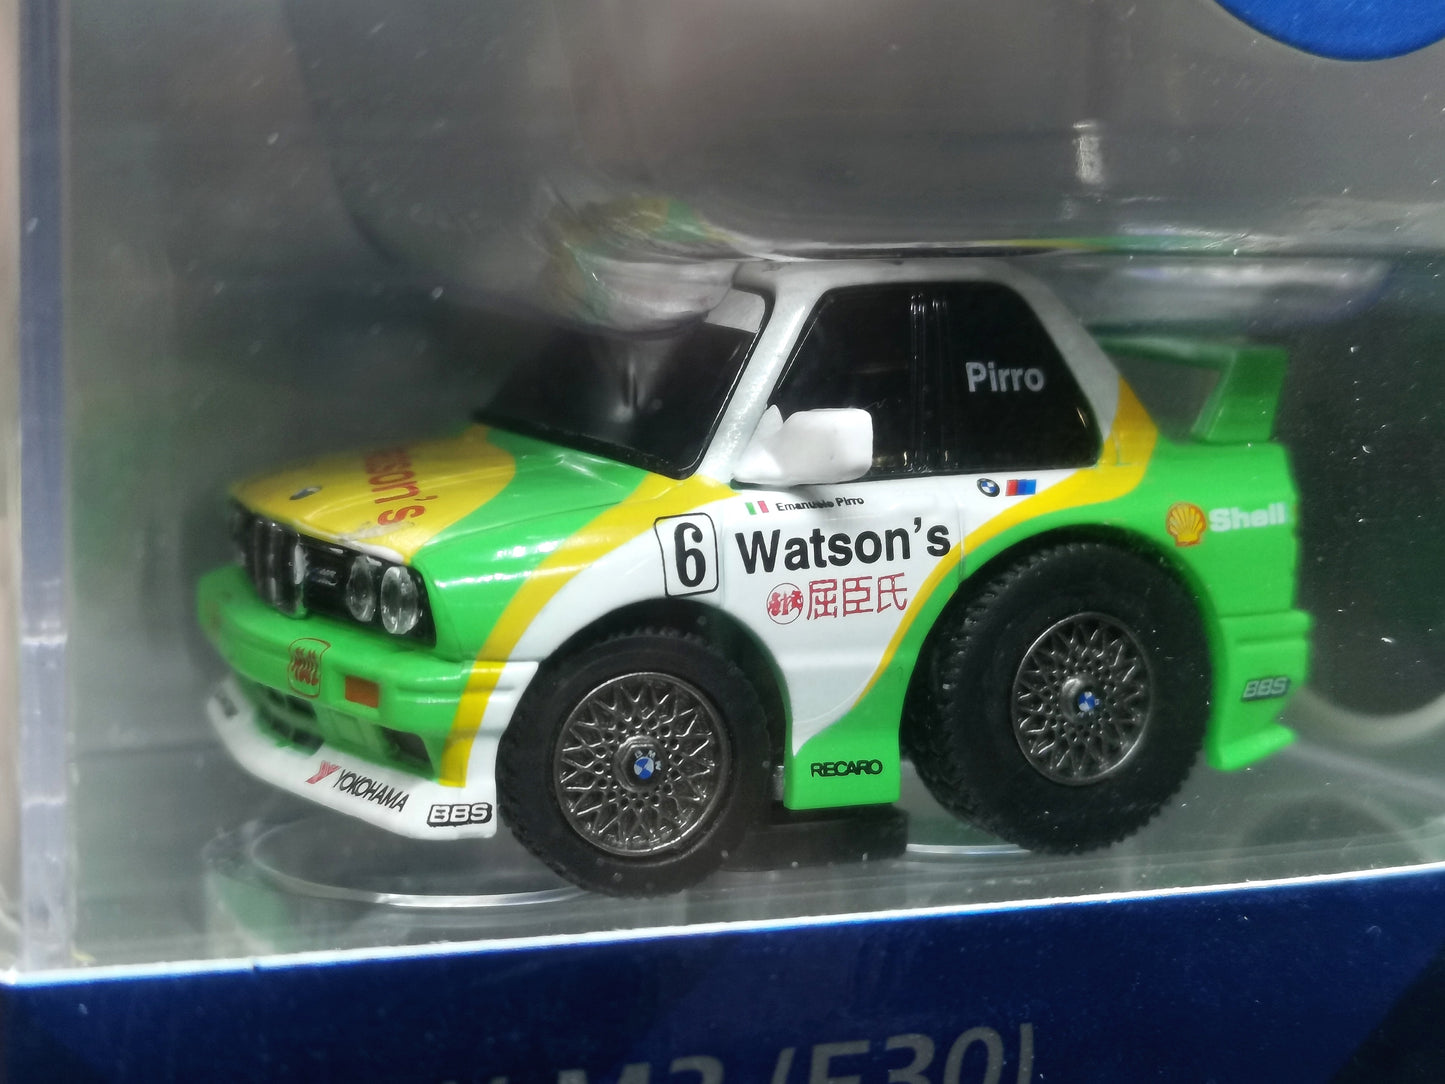 Tiny Q BMW M3 e30 Watson's #6